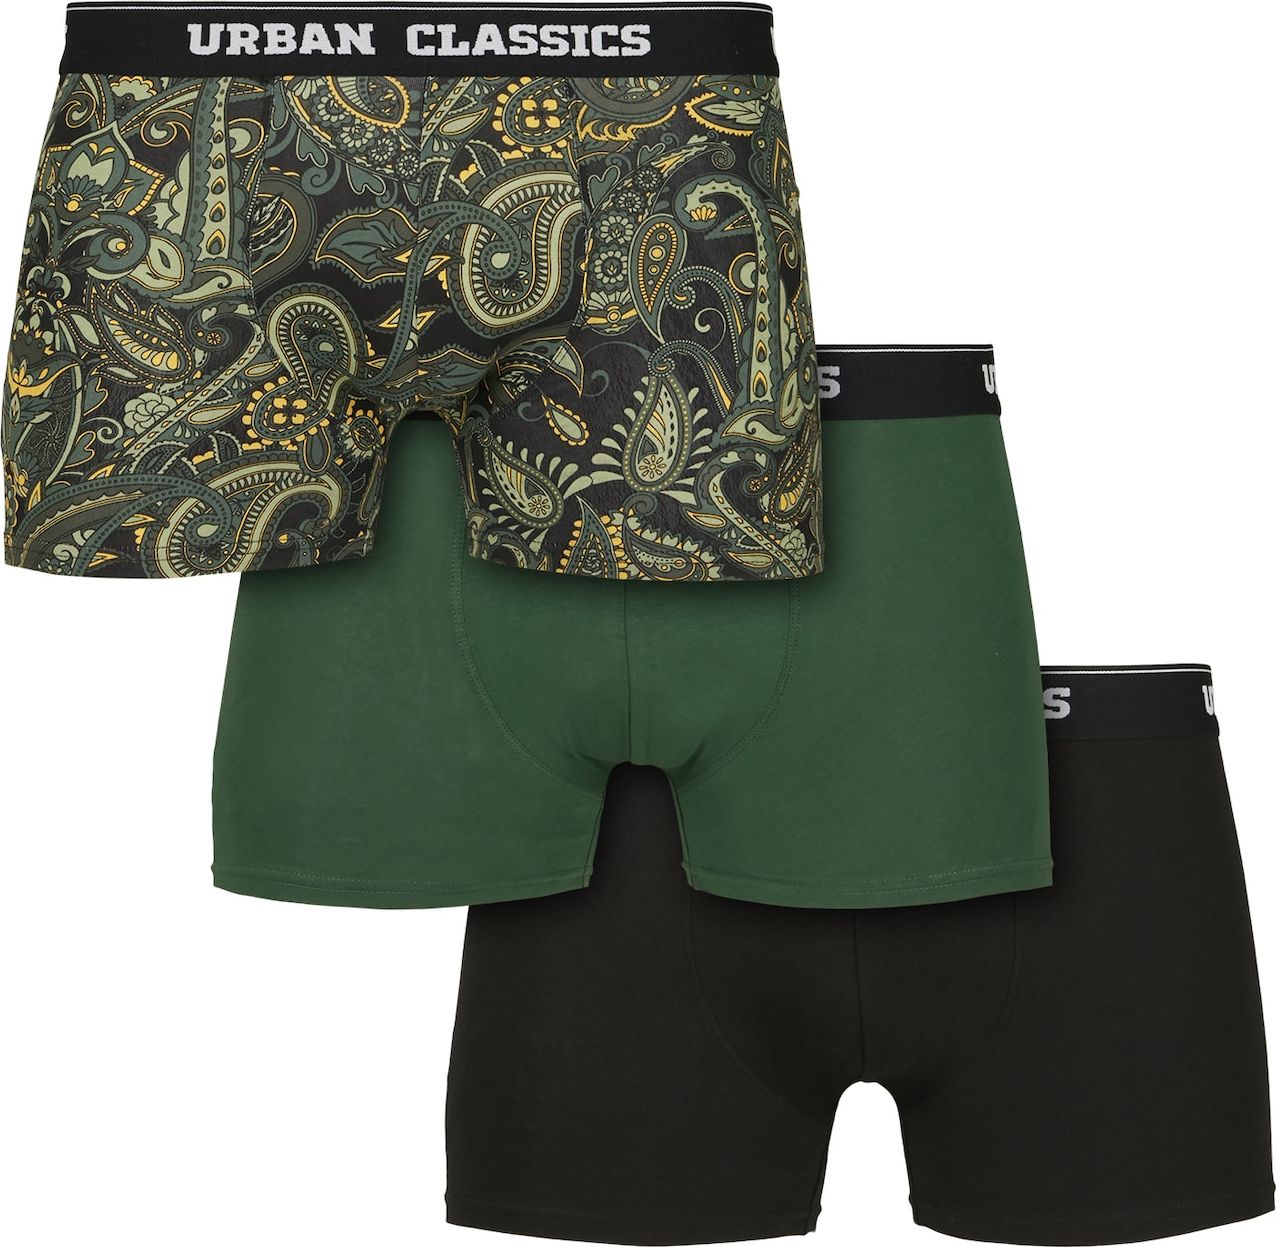 Urban Classics Boxerky khaki / olivová / tmavě zelená / černá